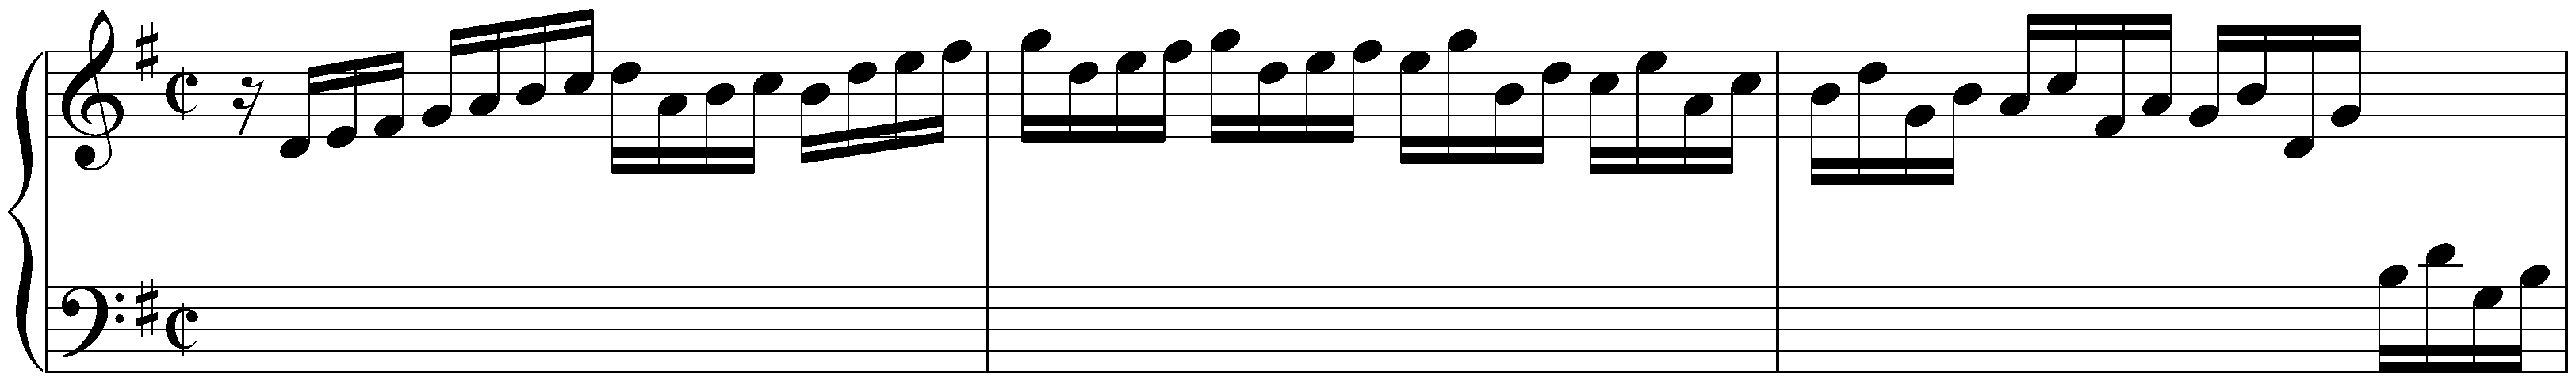 Partita in G major, HWV 450; 1. Preludio